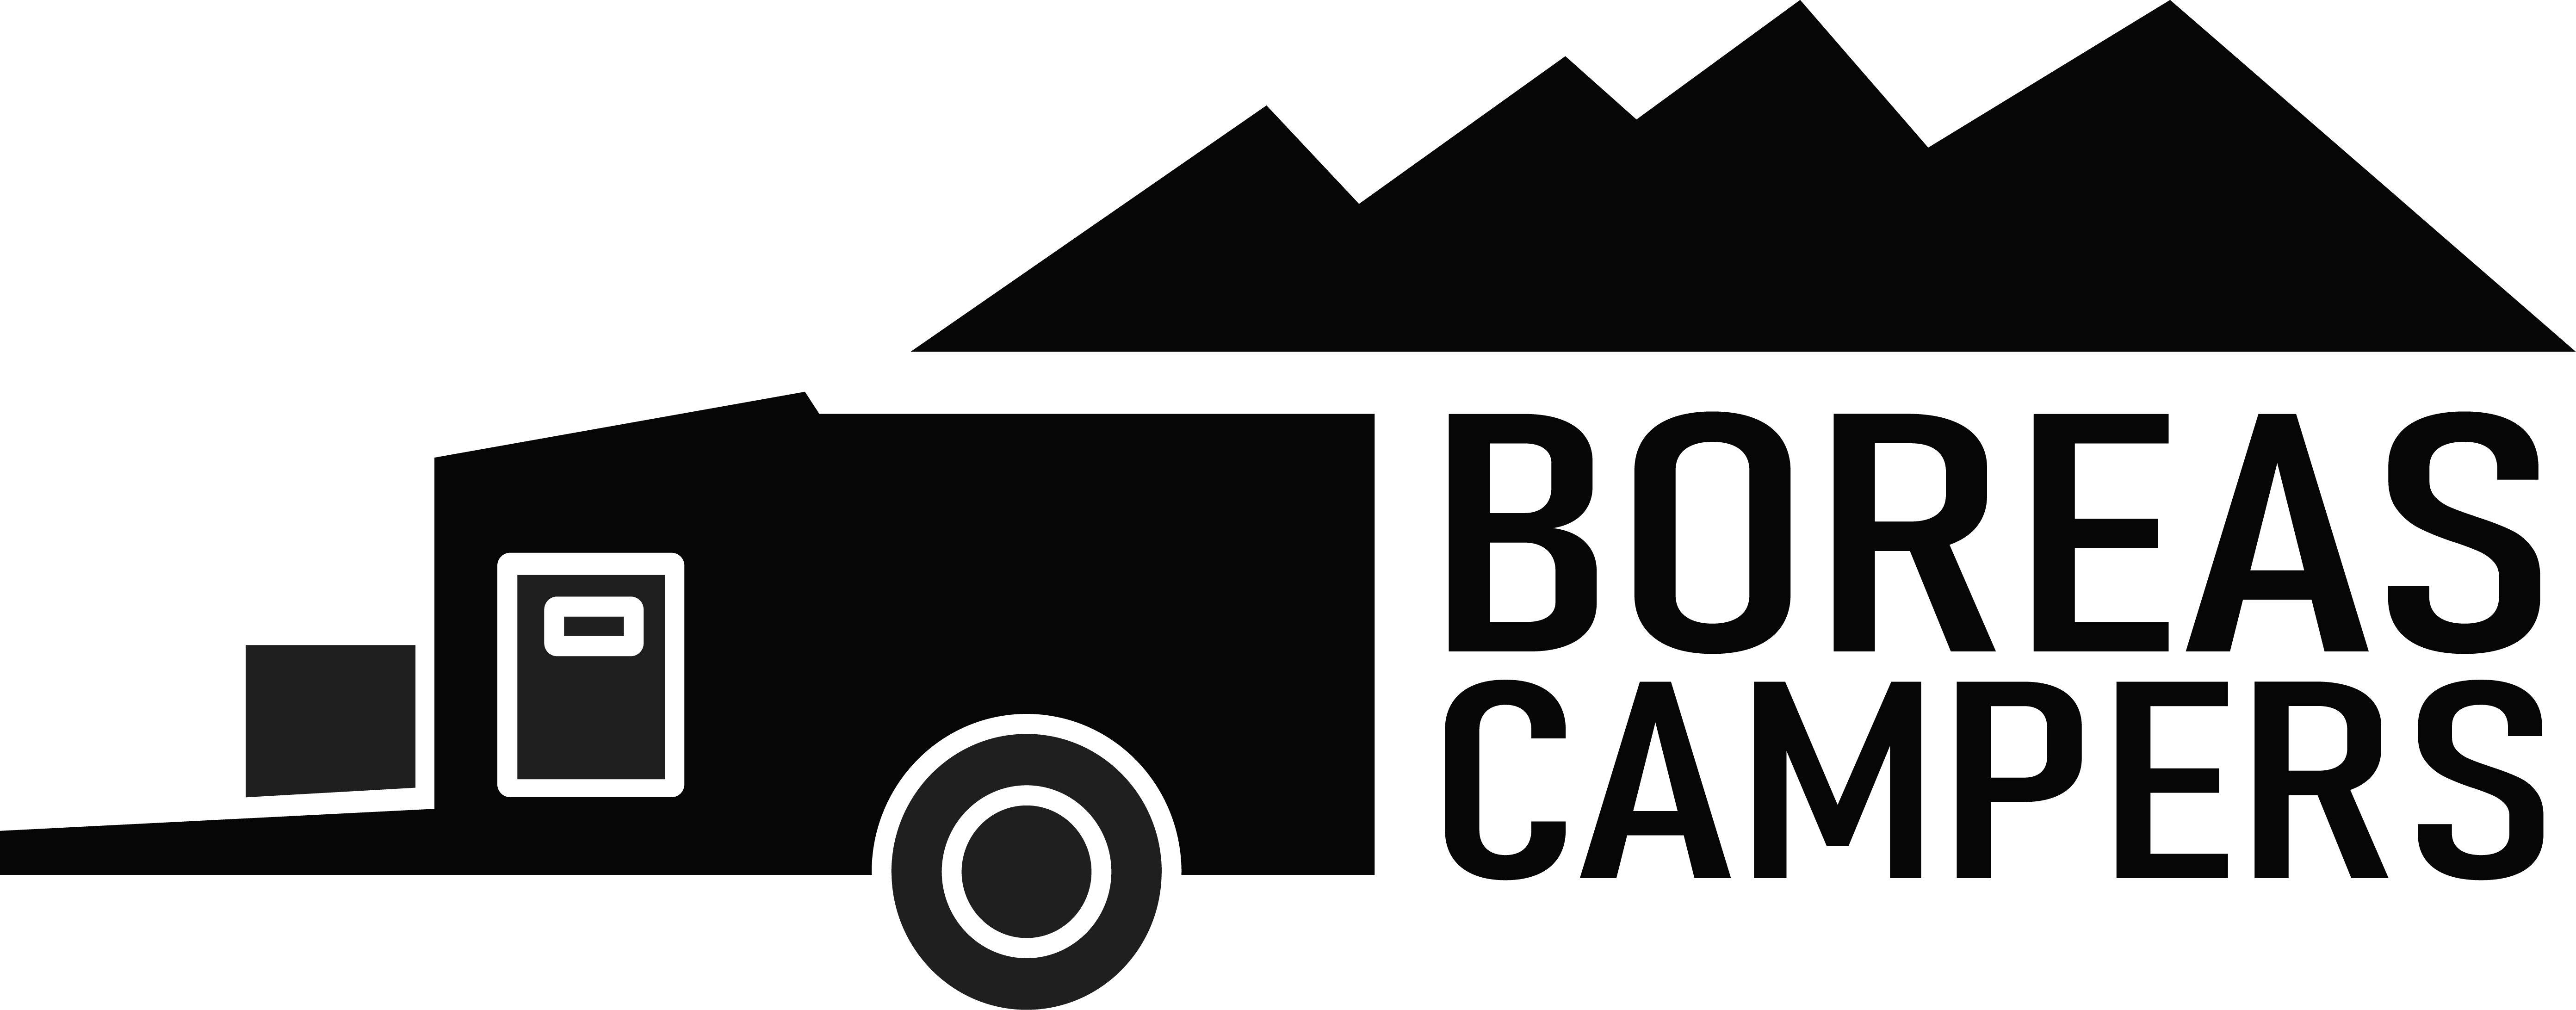 boreas campers logo